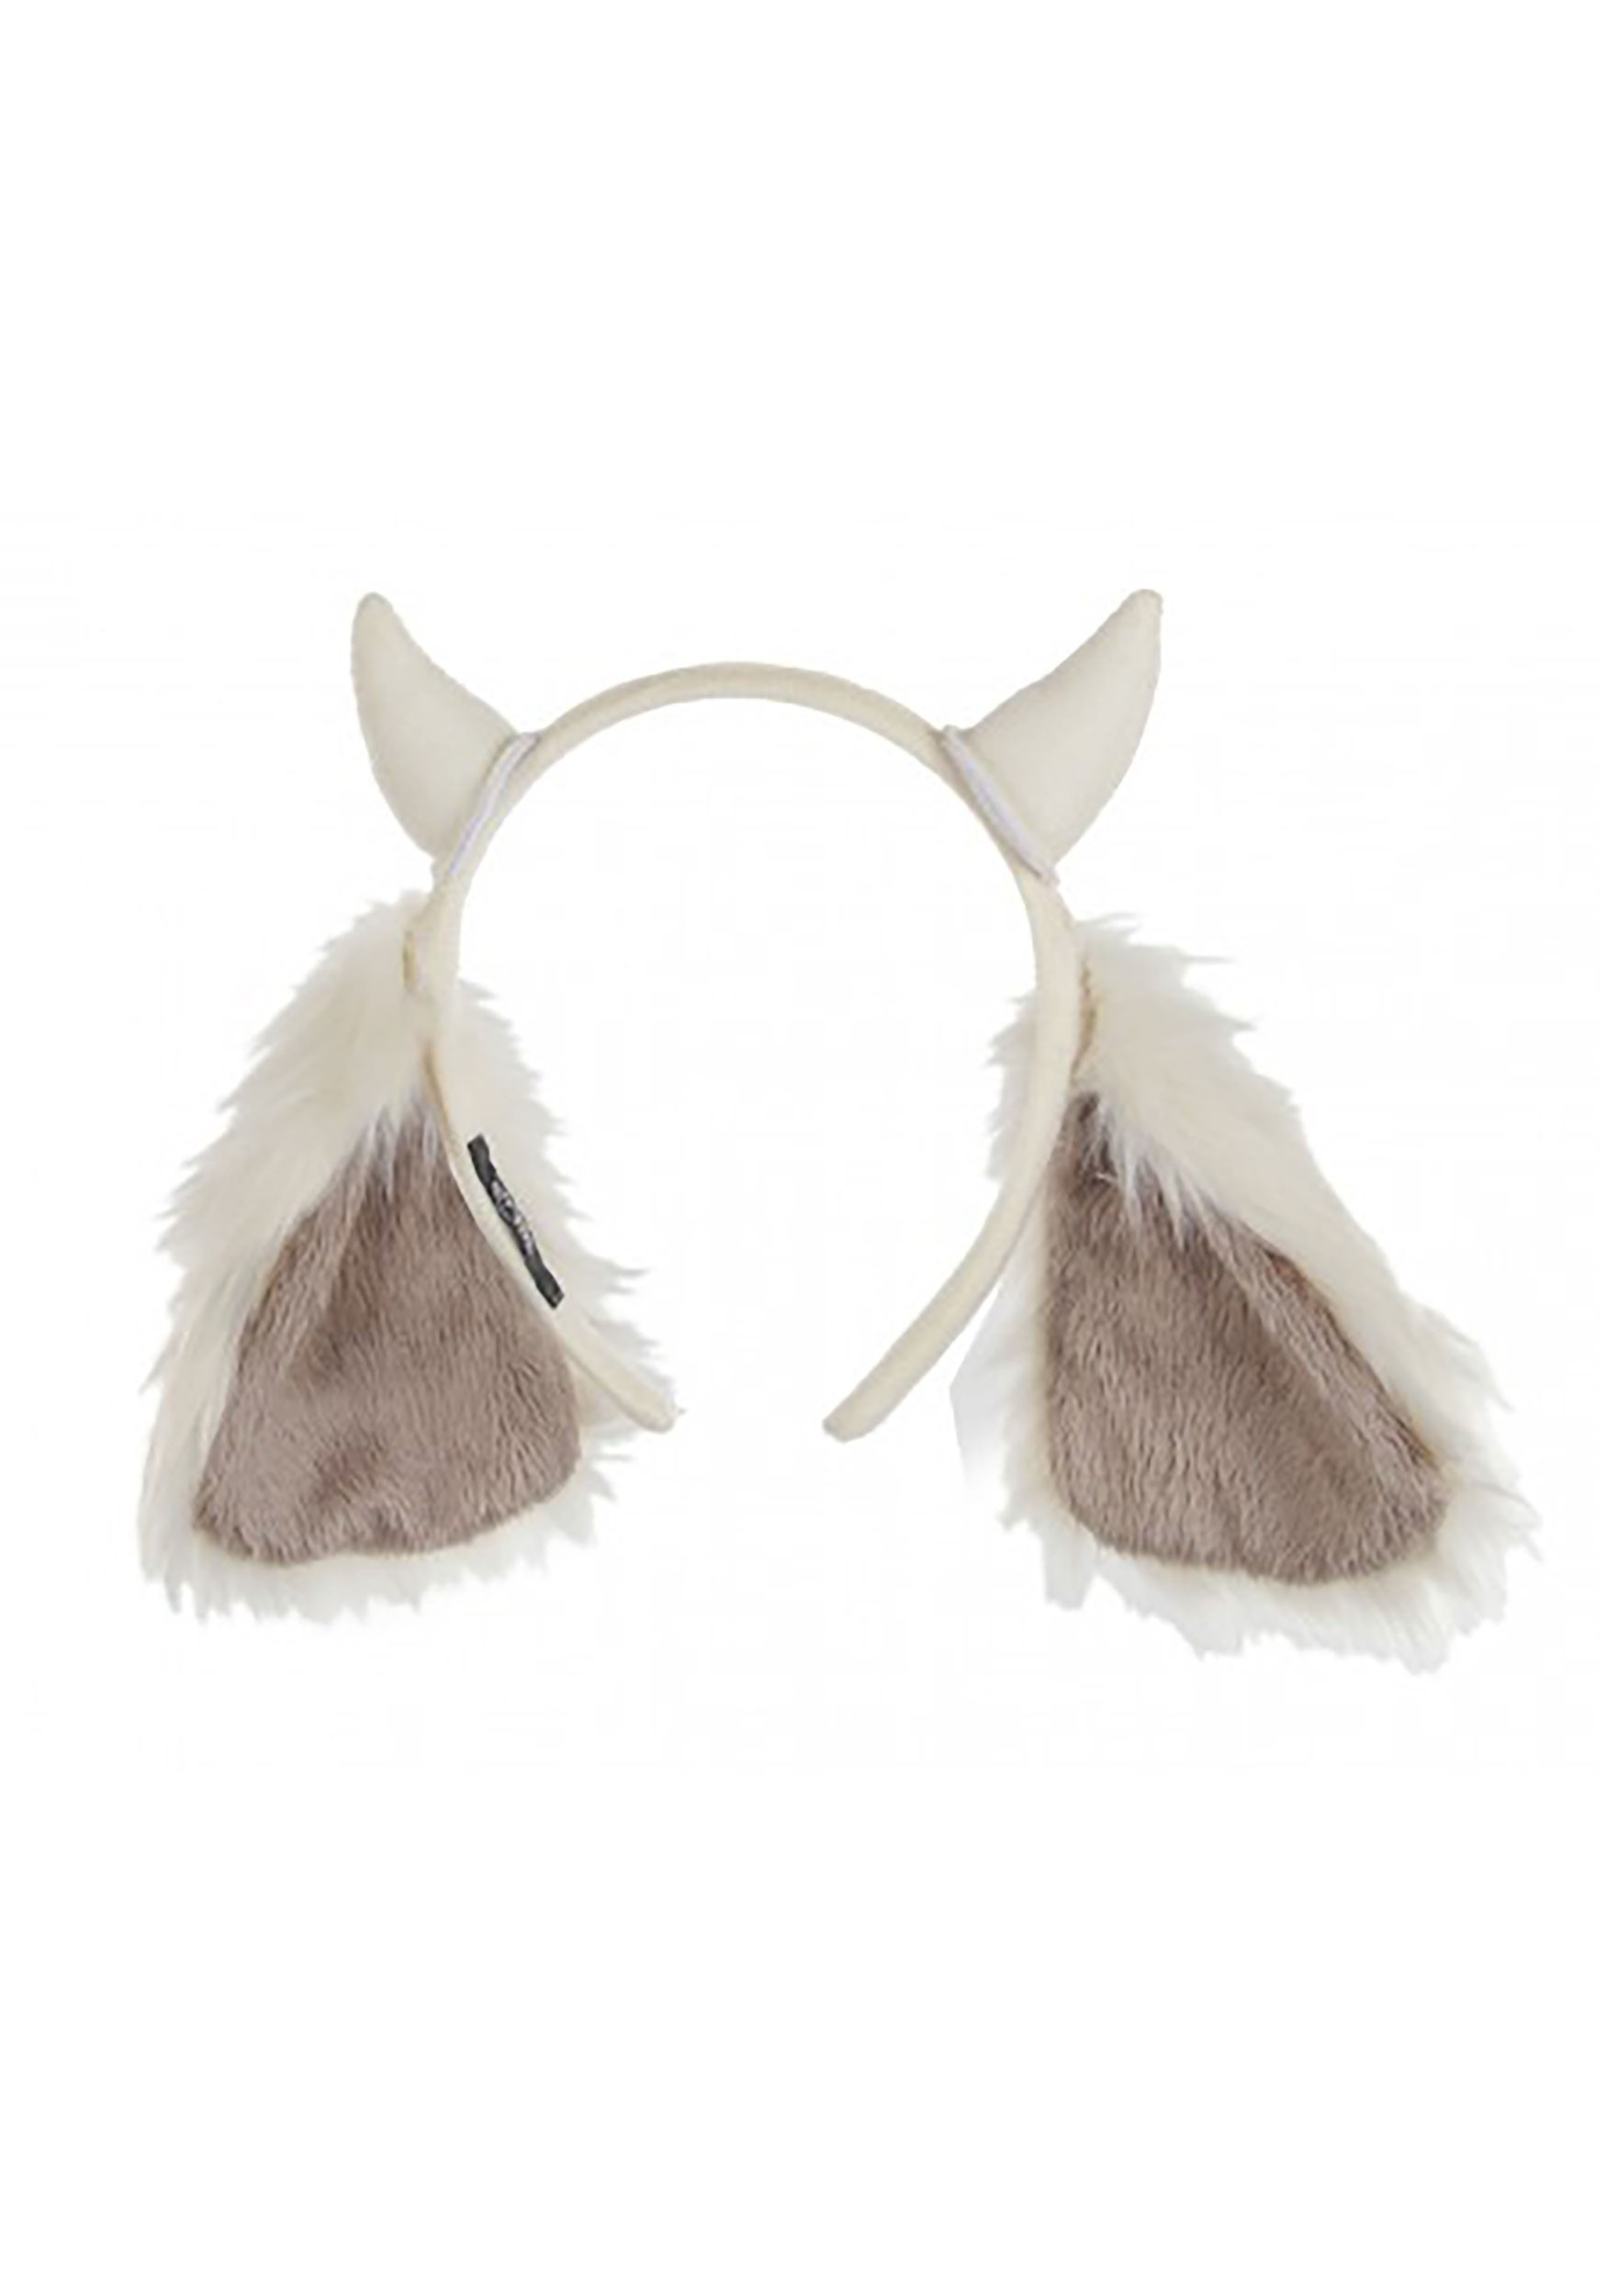 Goat Ears Headband For Kids